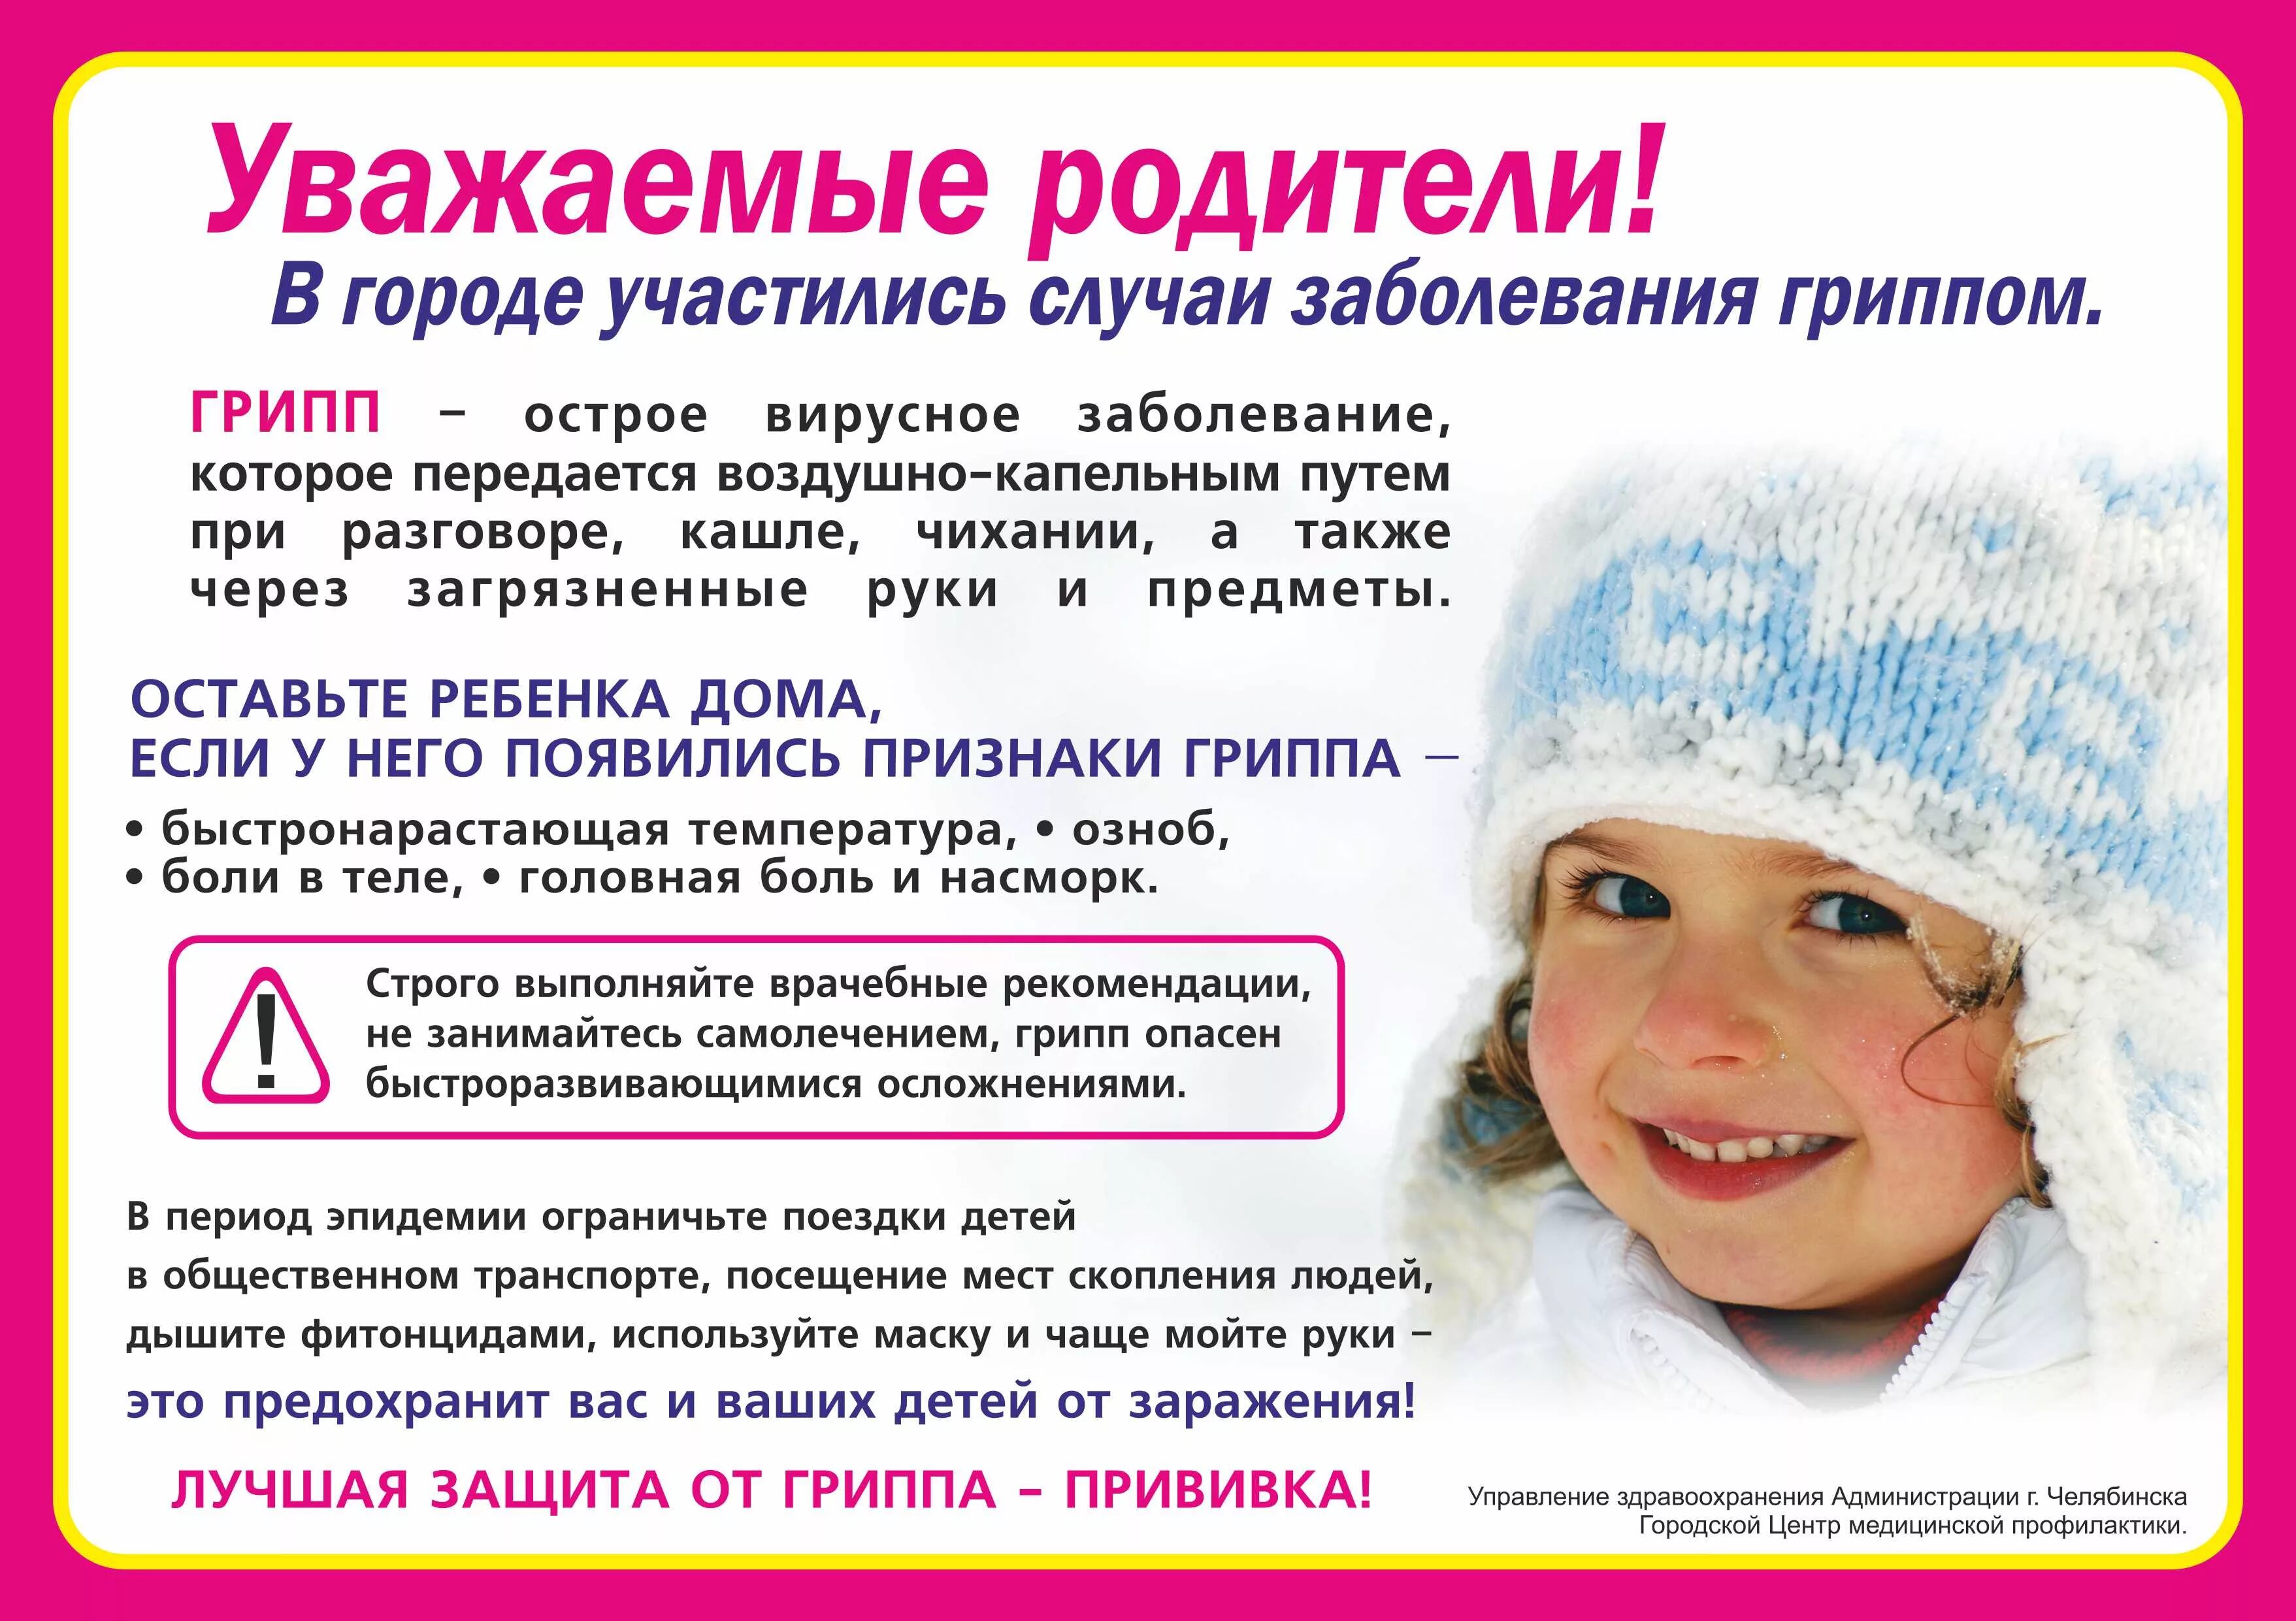 Занятия грипп. Профилактика простудных заболеваний зимой. Уважаемые родители дети с признаками ОРВИ. Профилактика при гриппе. Профилактика ОРВИ памятка.